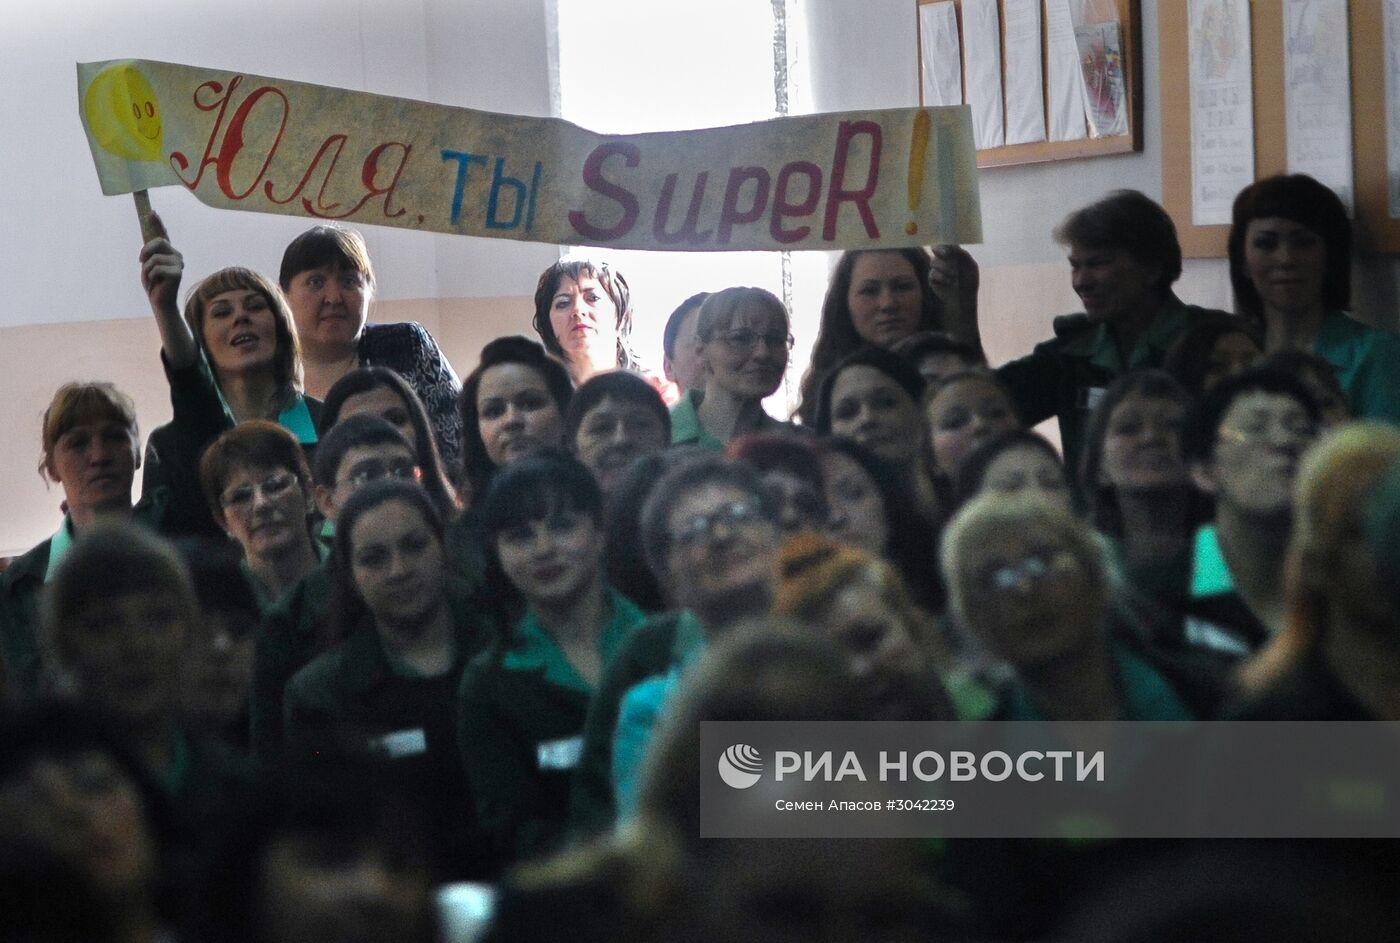 Конкурс красоты среди заключенных "Мисс весна - 2017" в Приморском крае